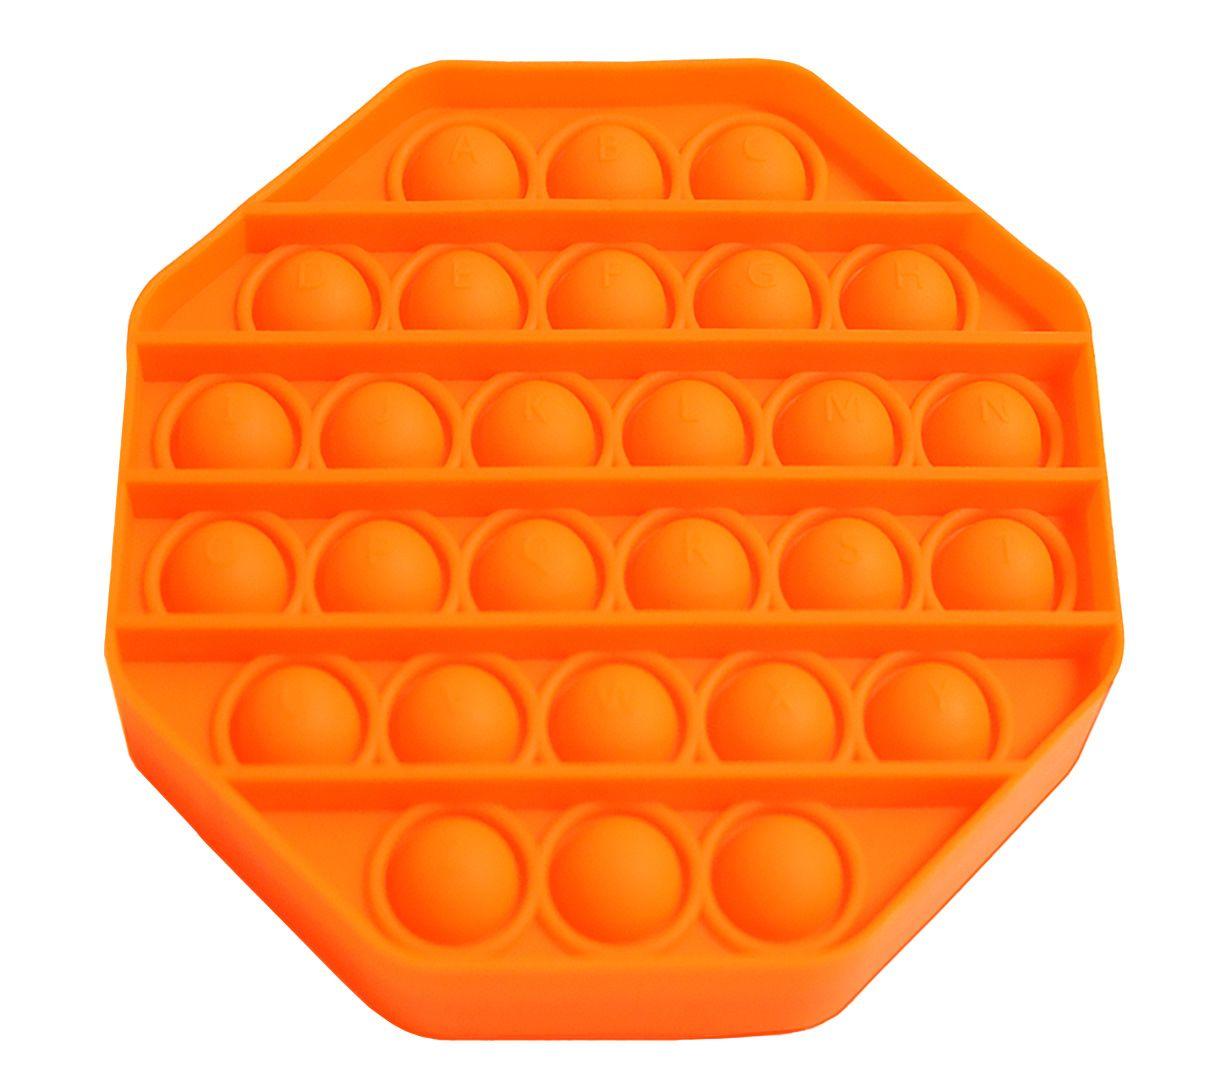 Zabawka sensoryczna PopIt antystresowa w kształcie oktagonu - pomarańczowa